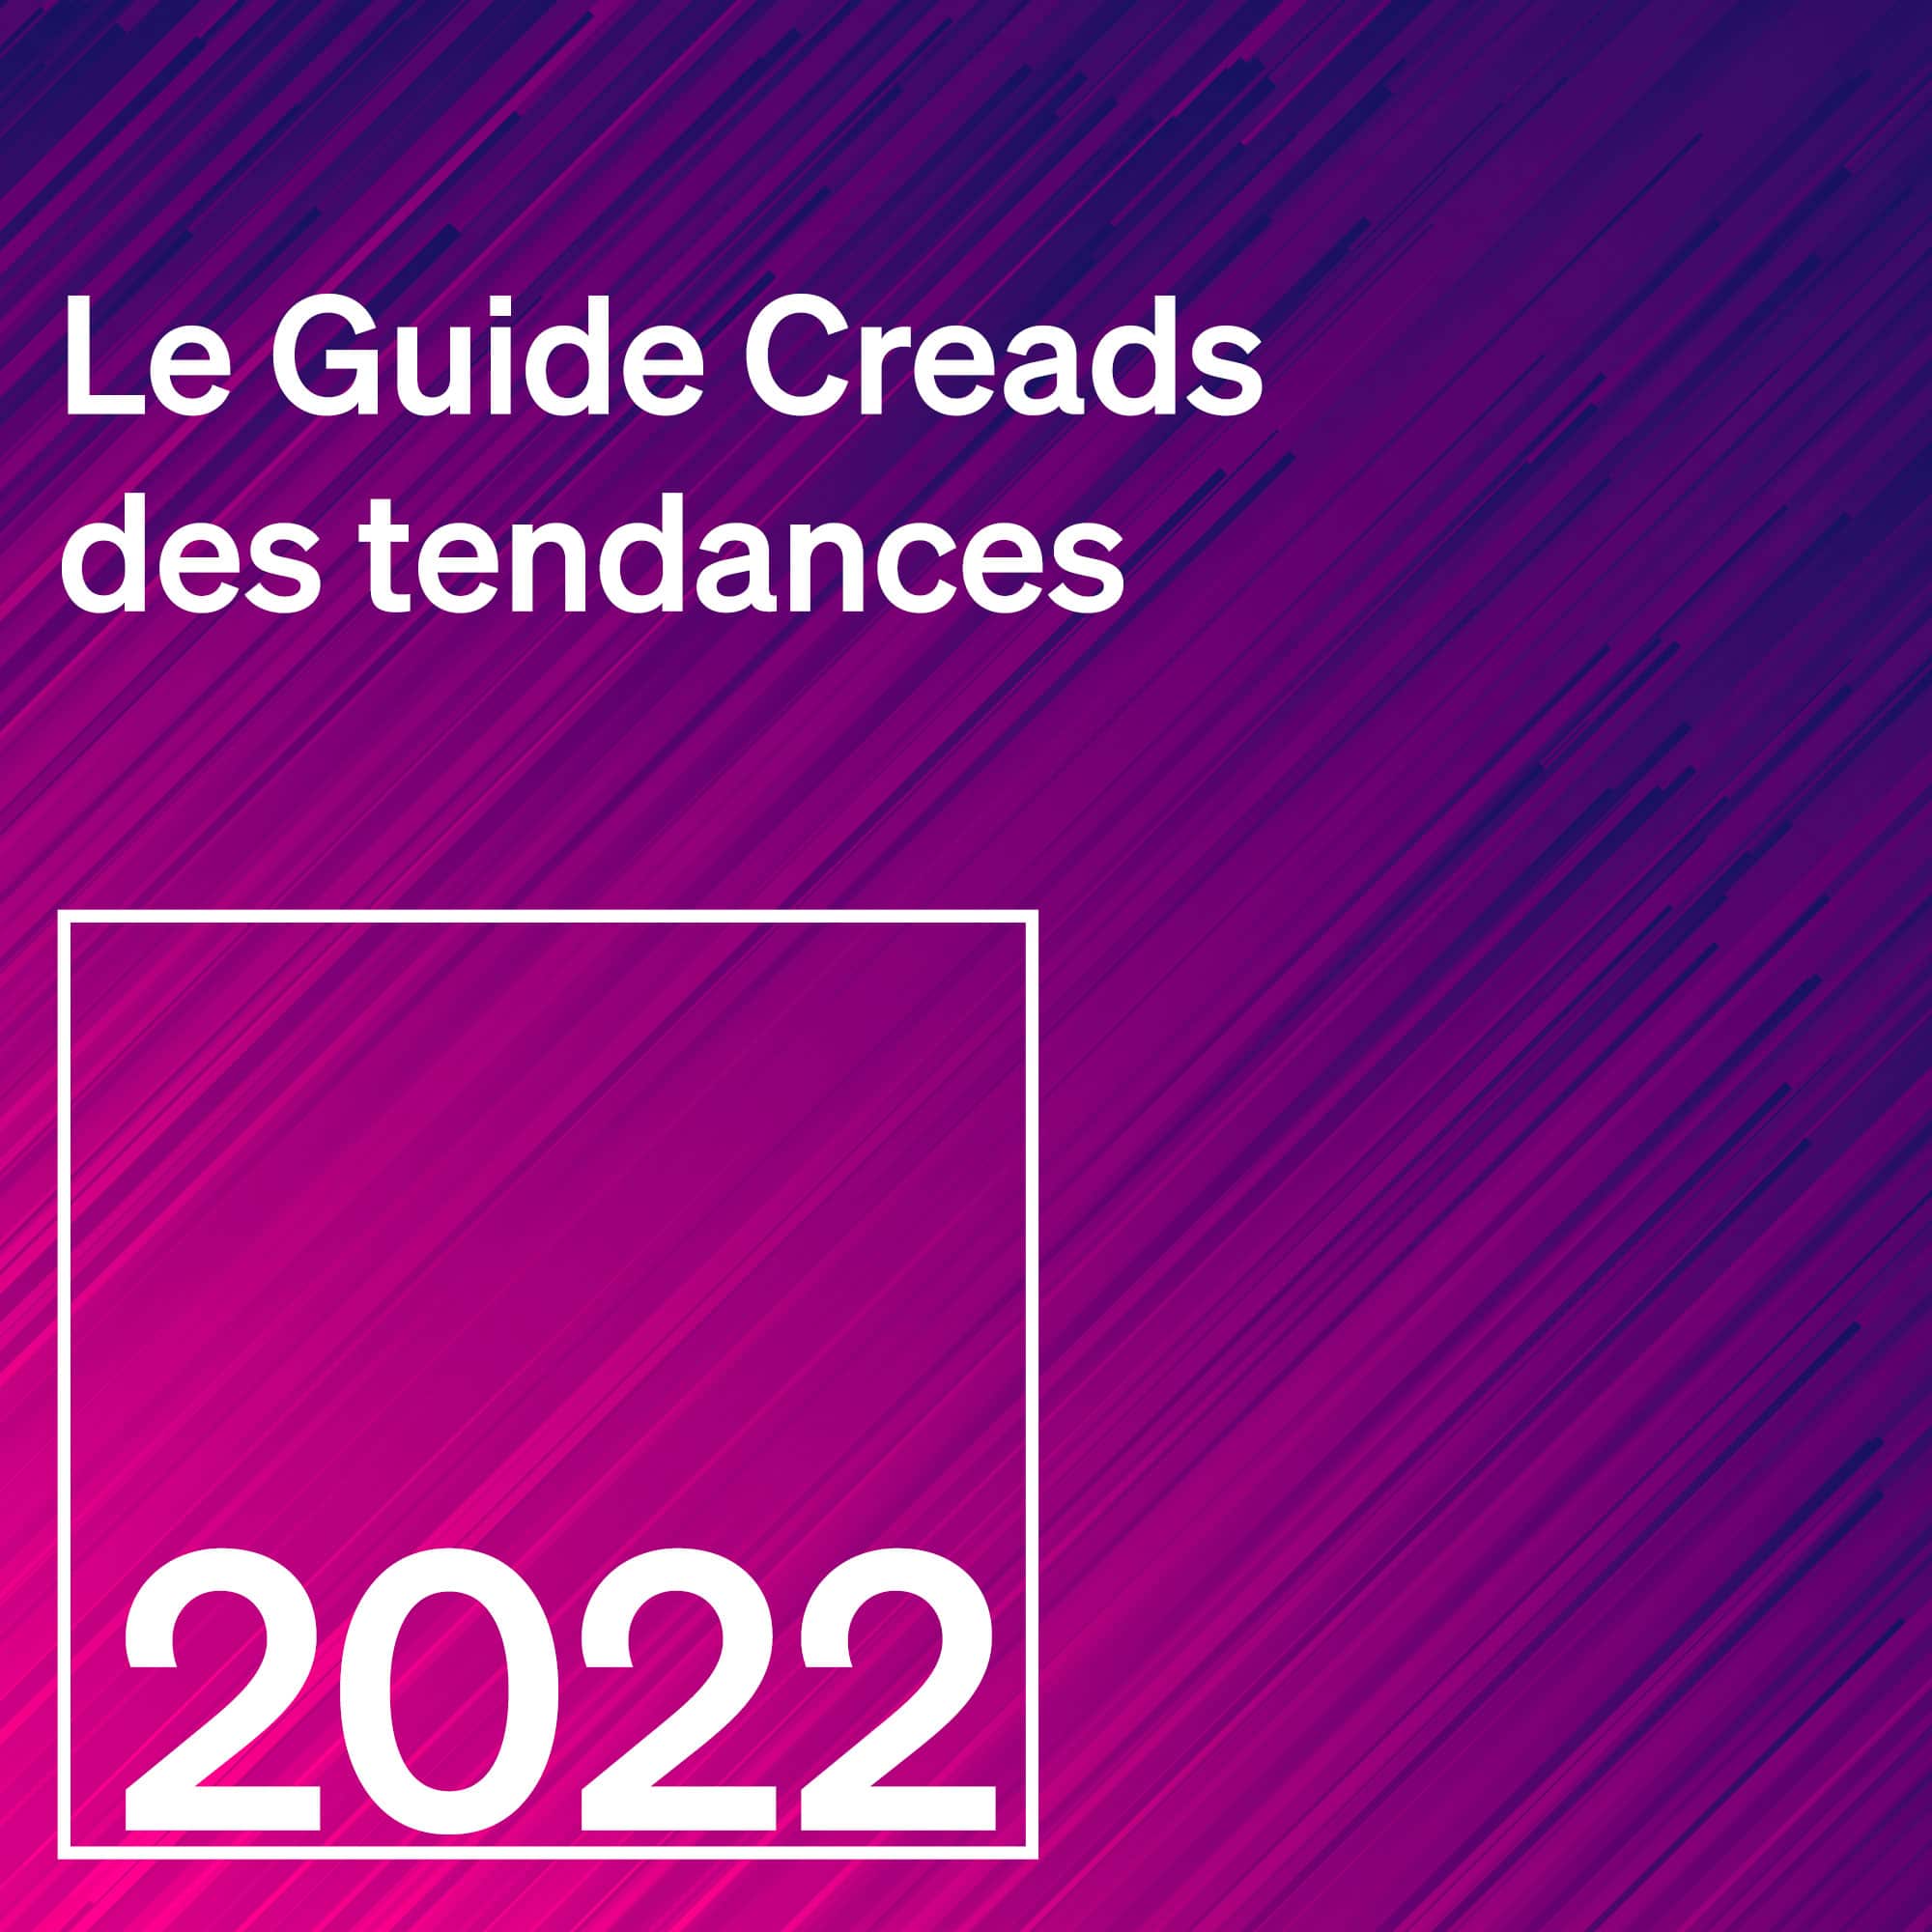 Le Guide CREADS <br>des tendances 2022